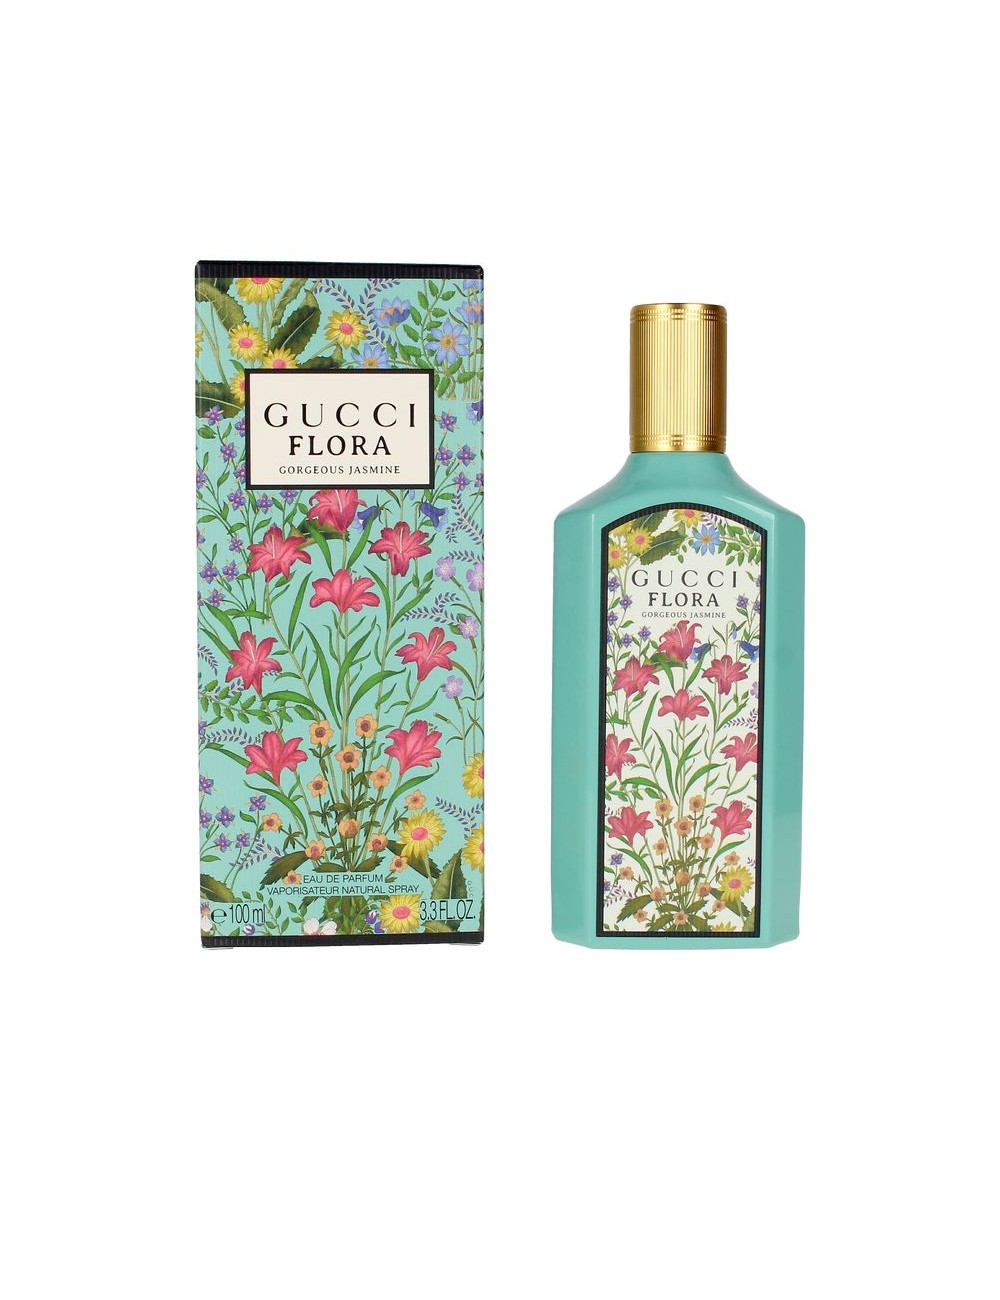 GUCCI FLORA gorgeous jasmine eau de parfum vapo